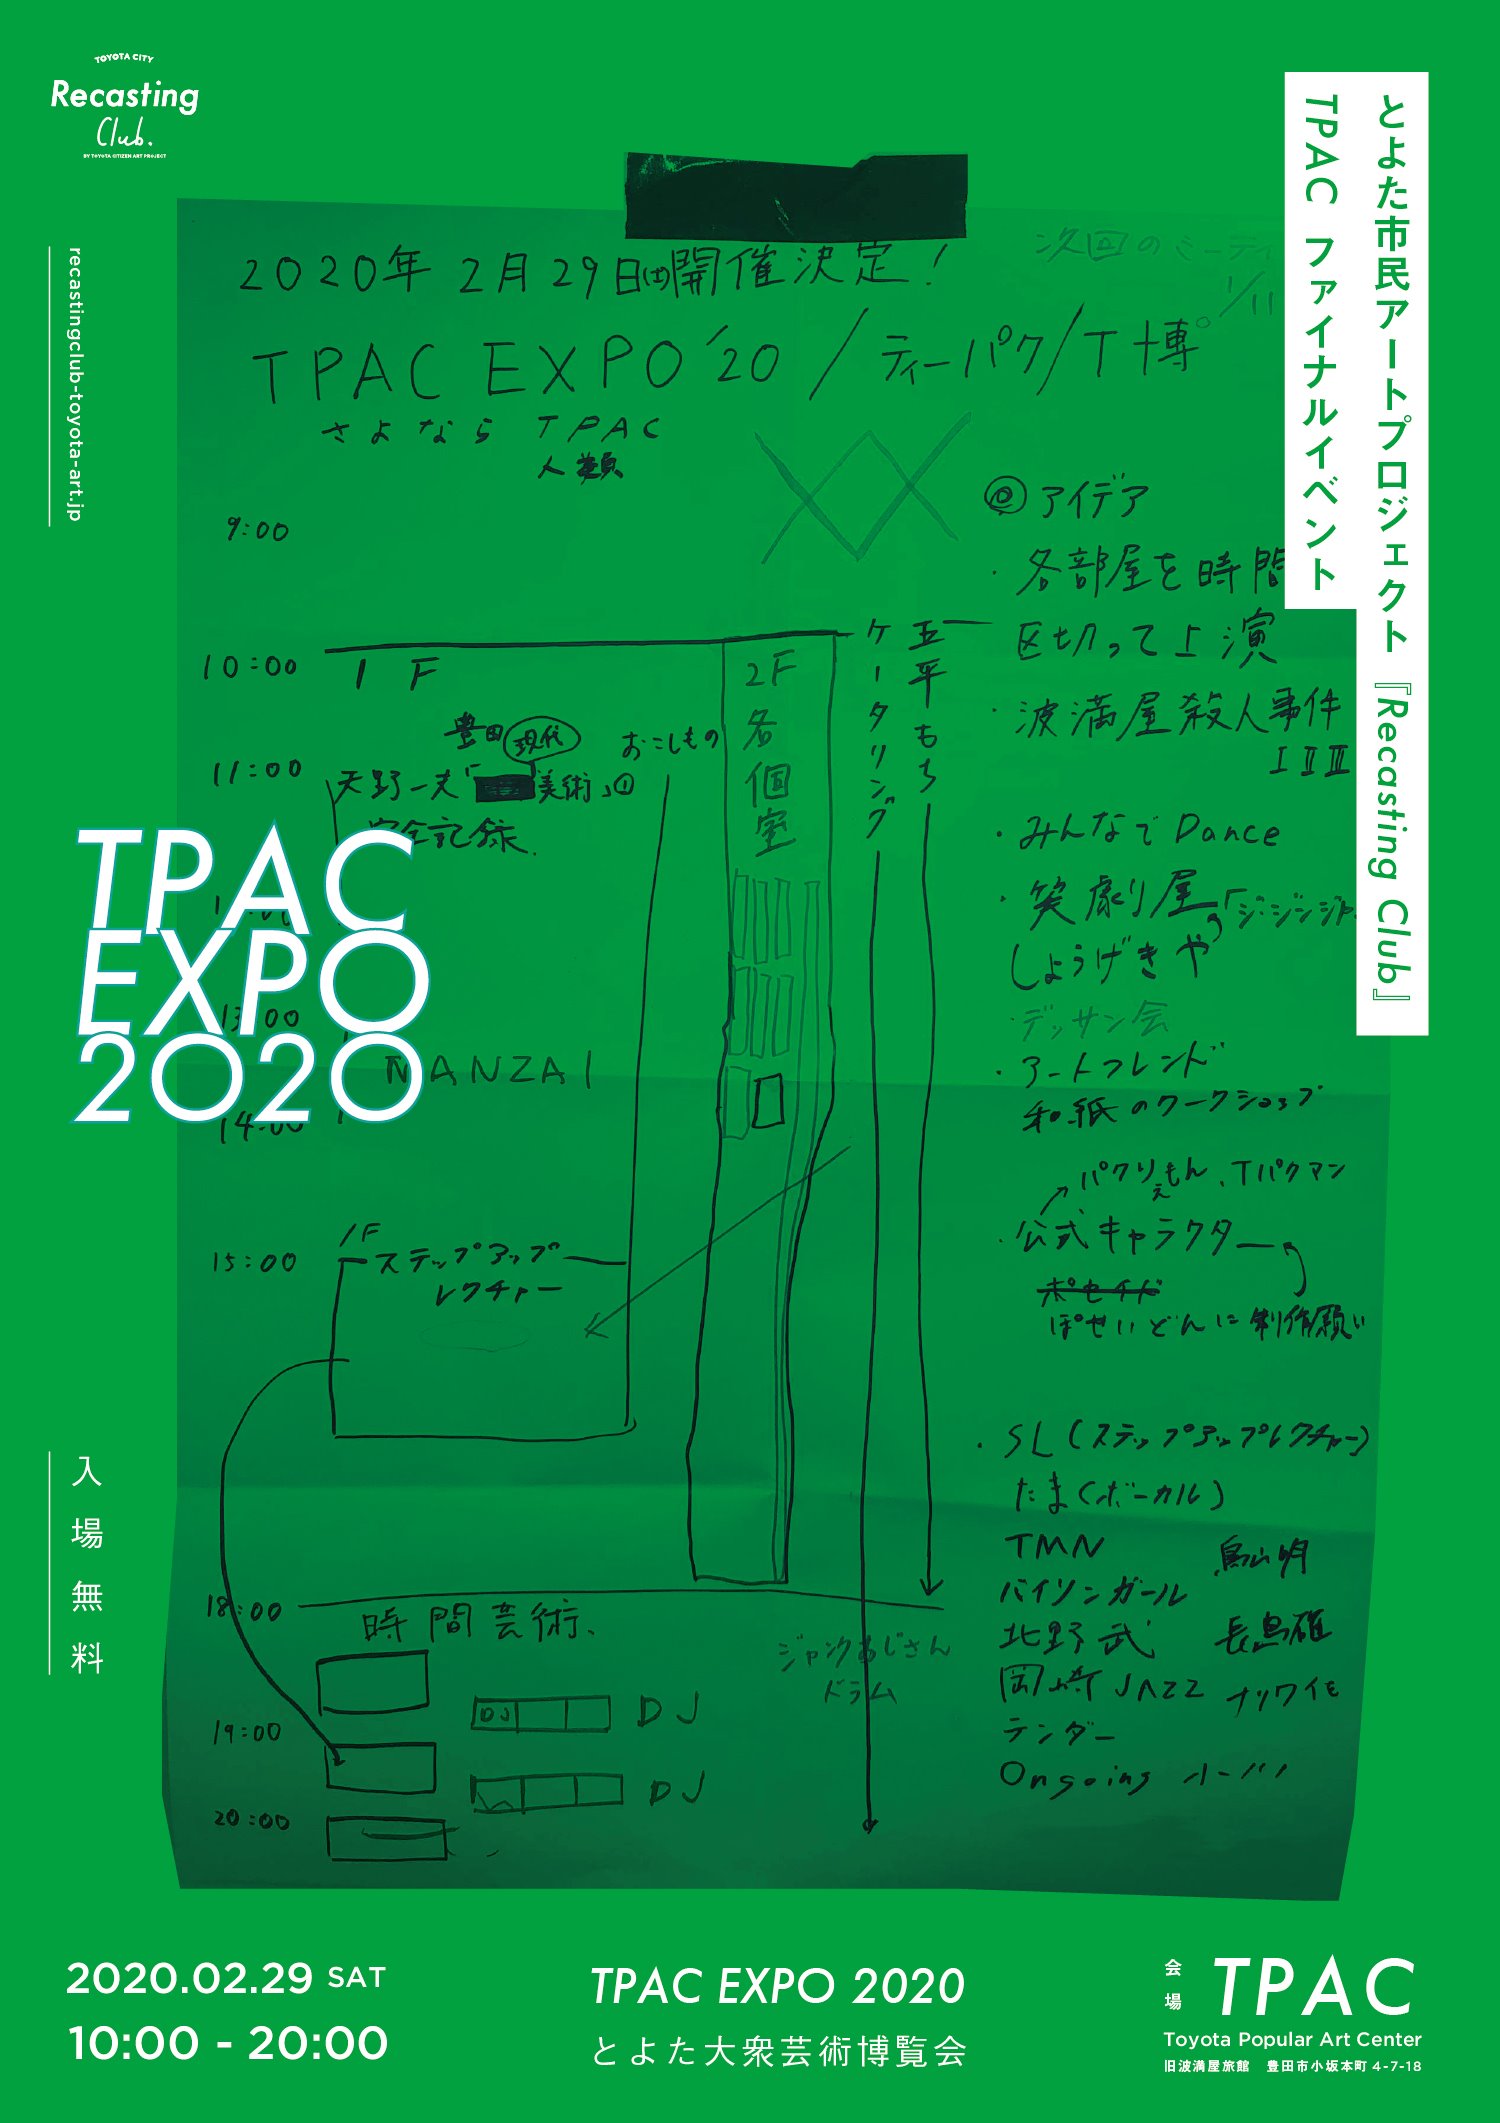 TPAC EXPO 2020 / とよた大衆芸術博覧会　開催